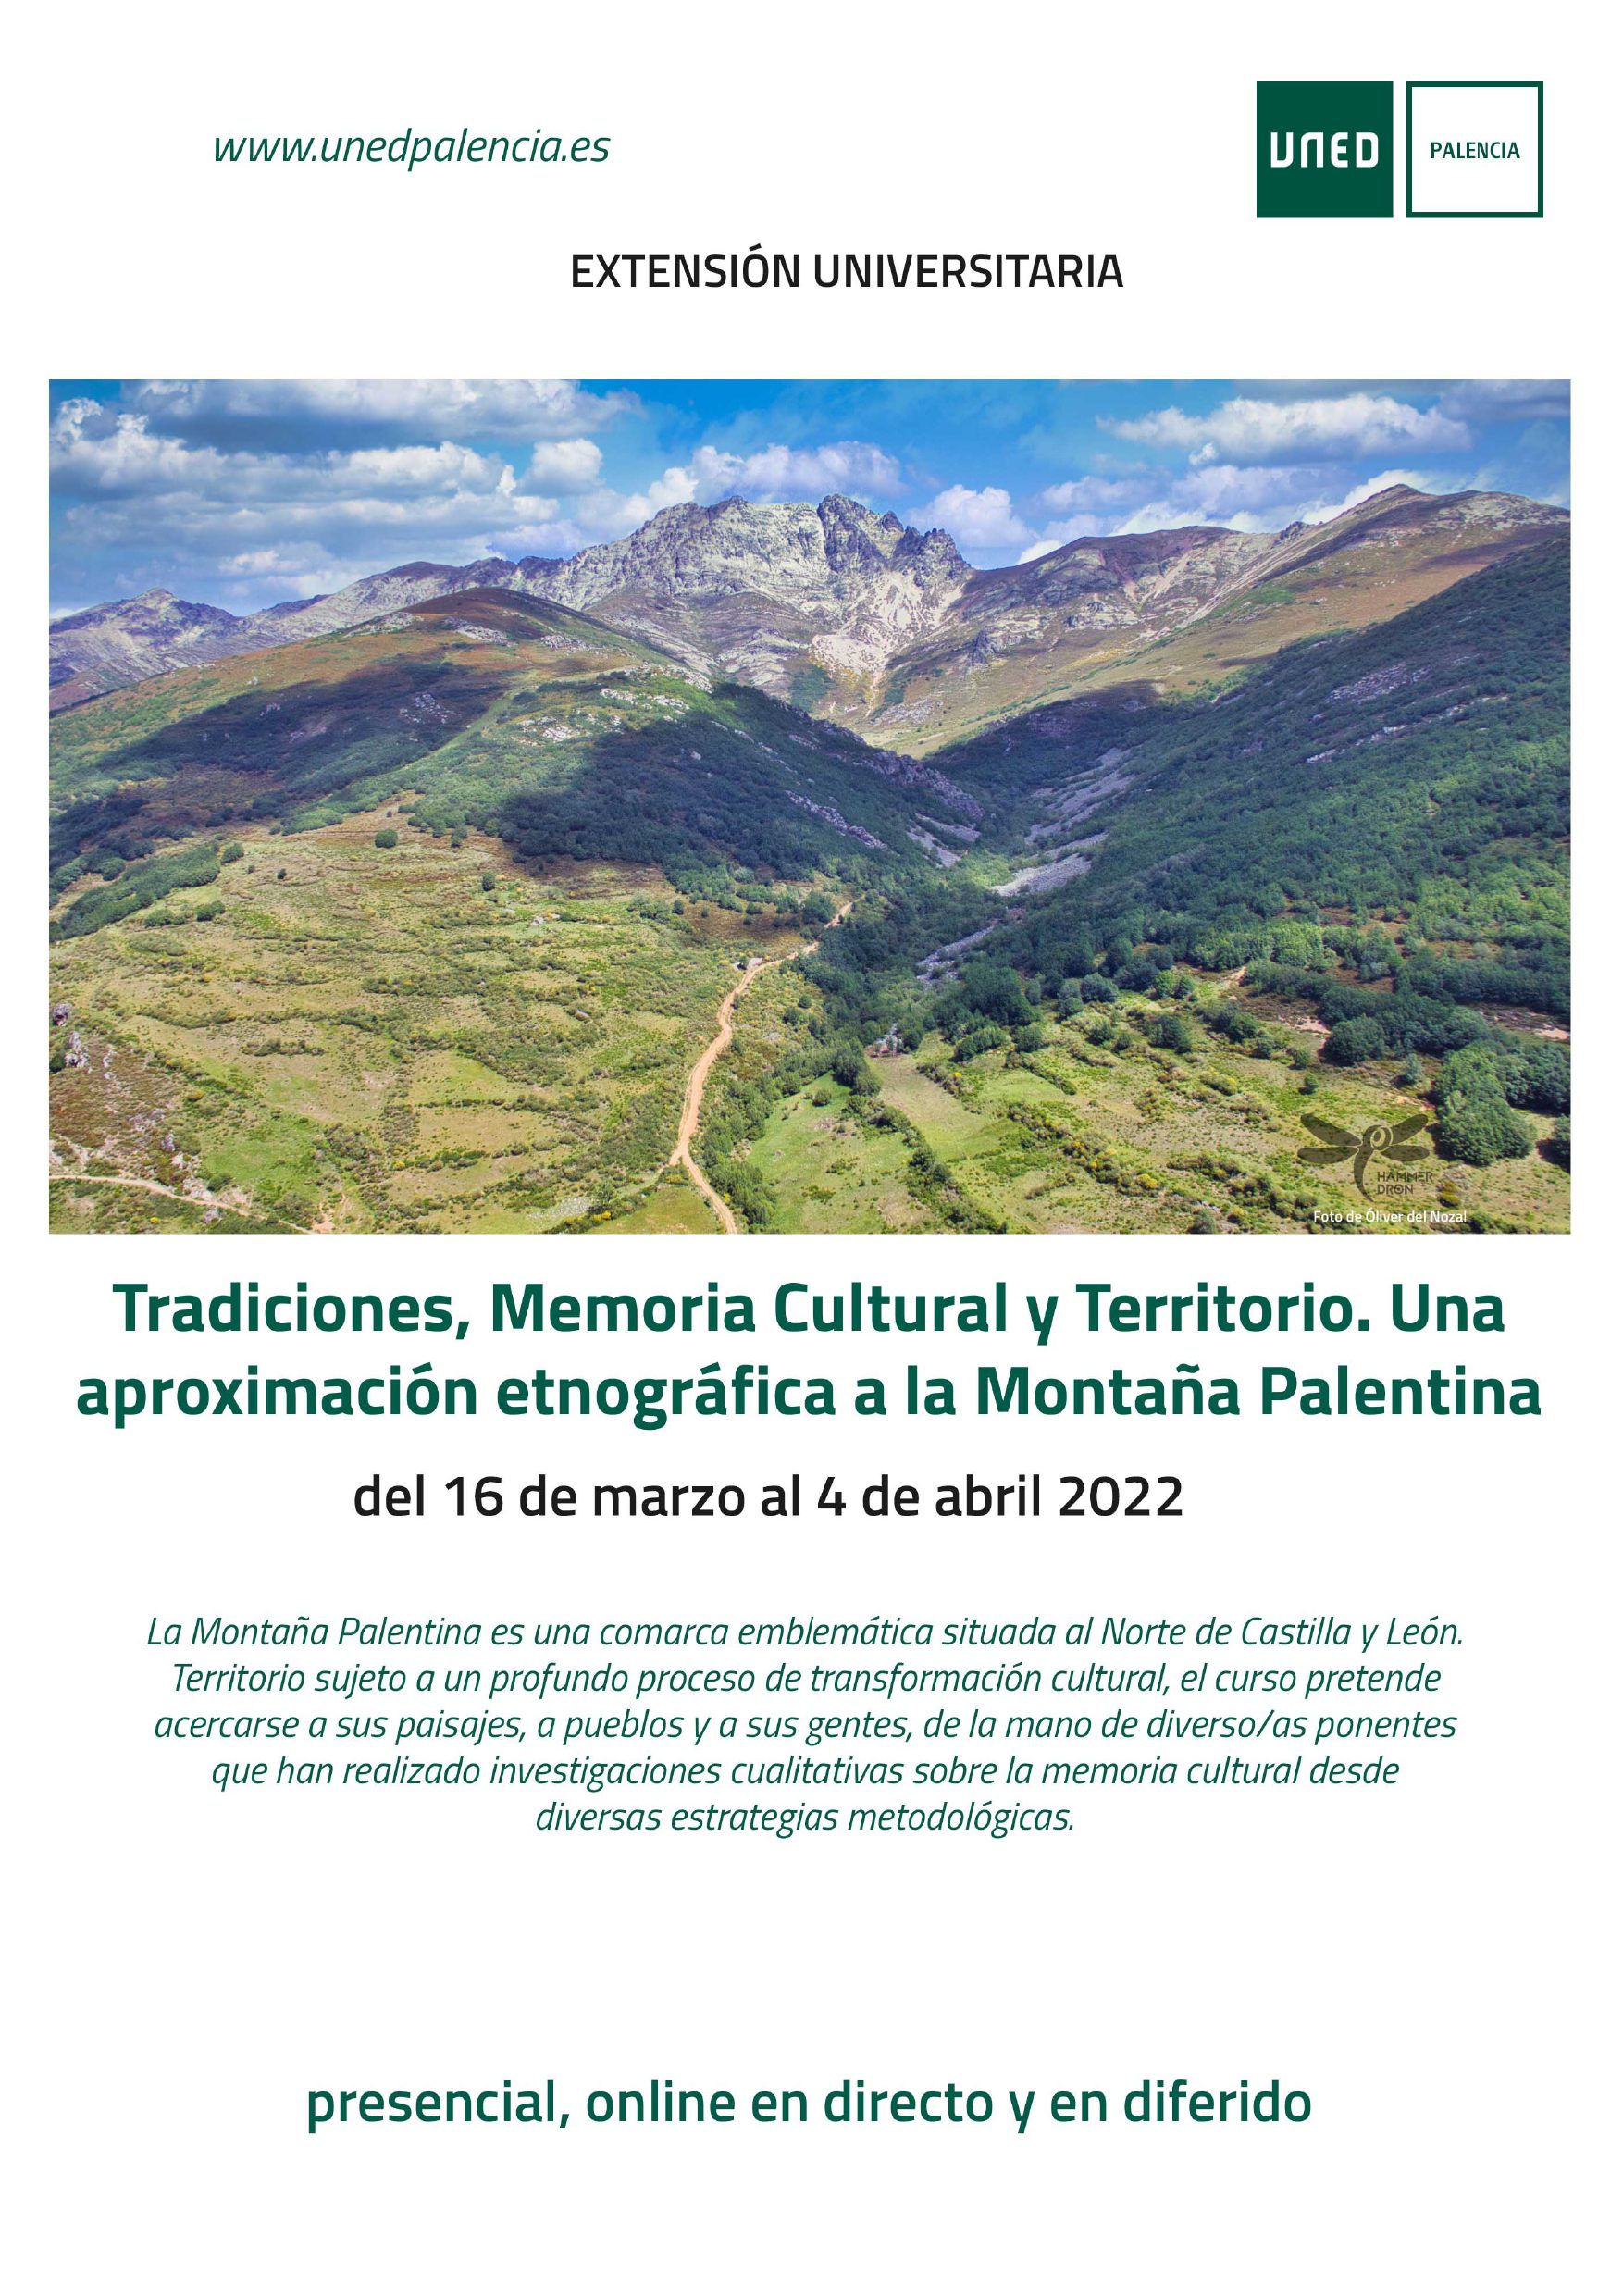 Tradiciones, Memoria Cultural y Territorio. Una aproximación etnográfica a la Montaña Palentina. Del 16 de marzo al 4 de abril de 2022